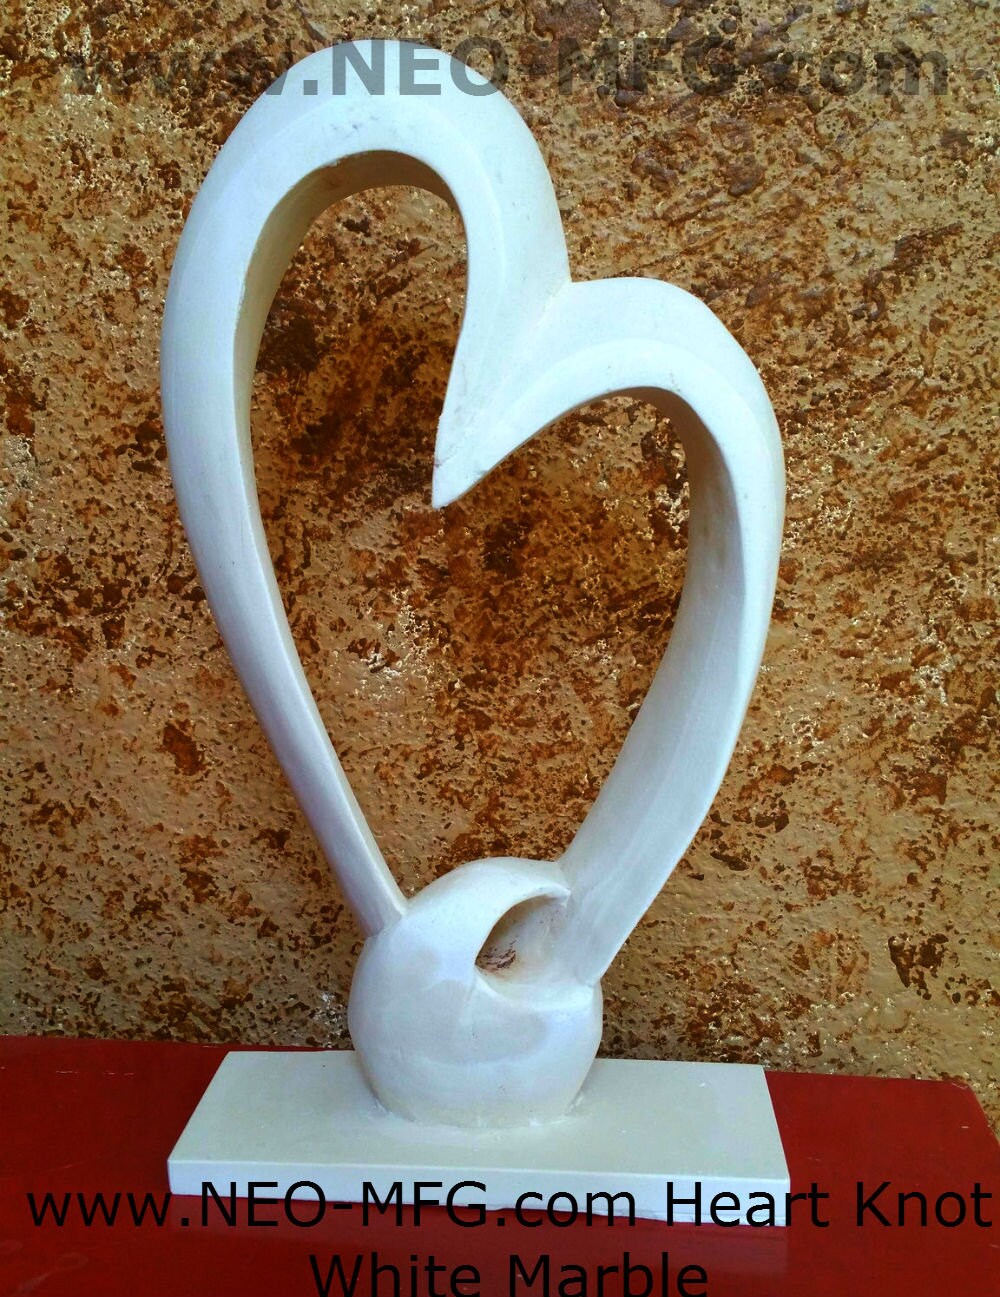 Decor Heart Knot Sculpture statue www.Neo-Mfg.com 11